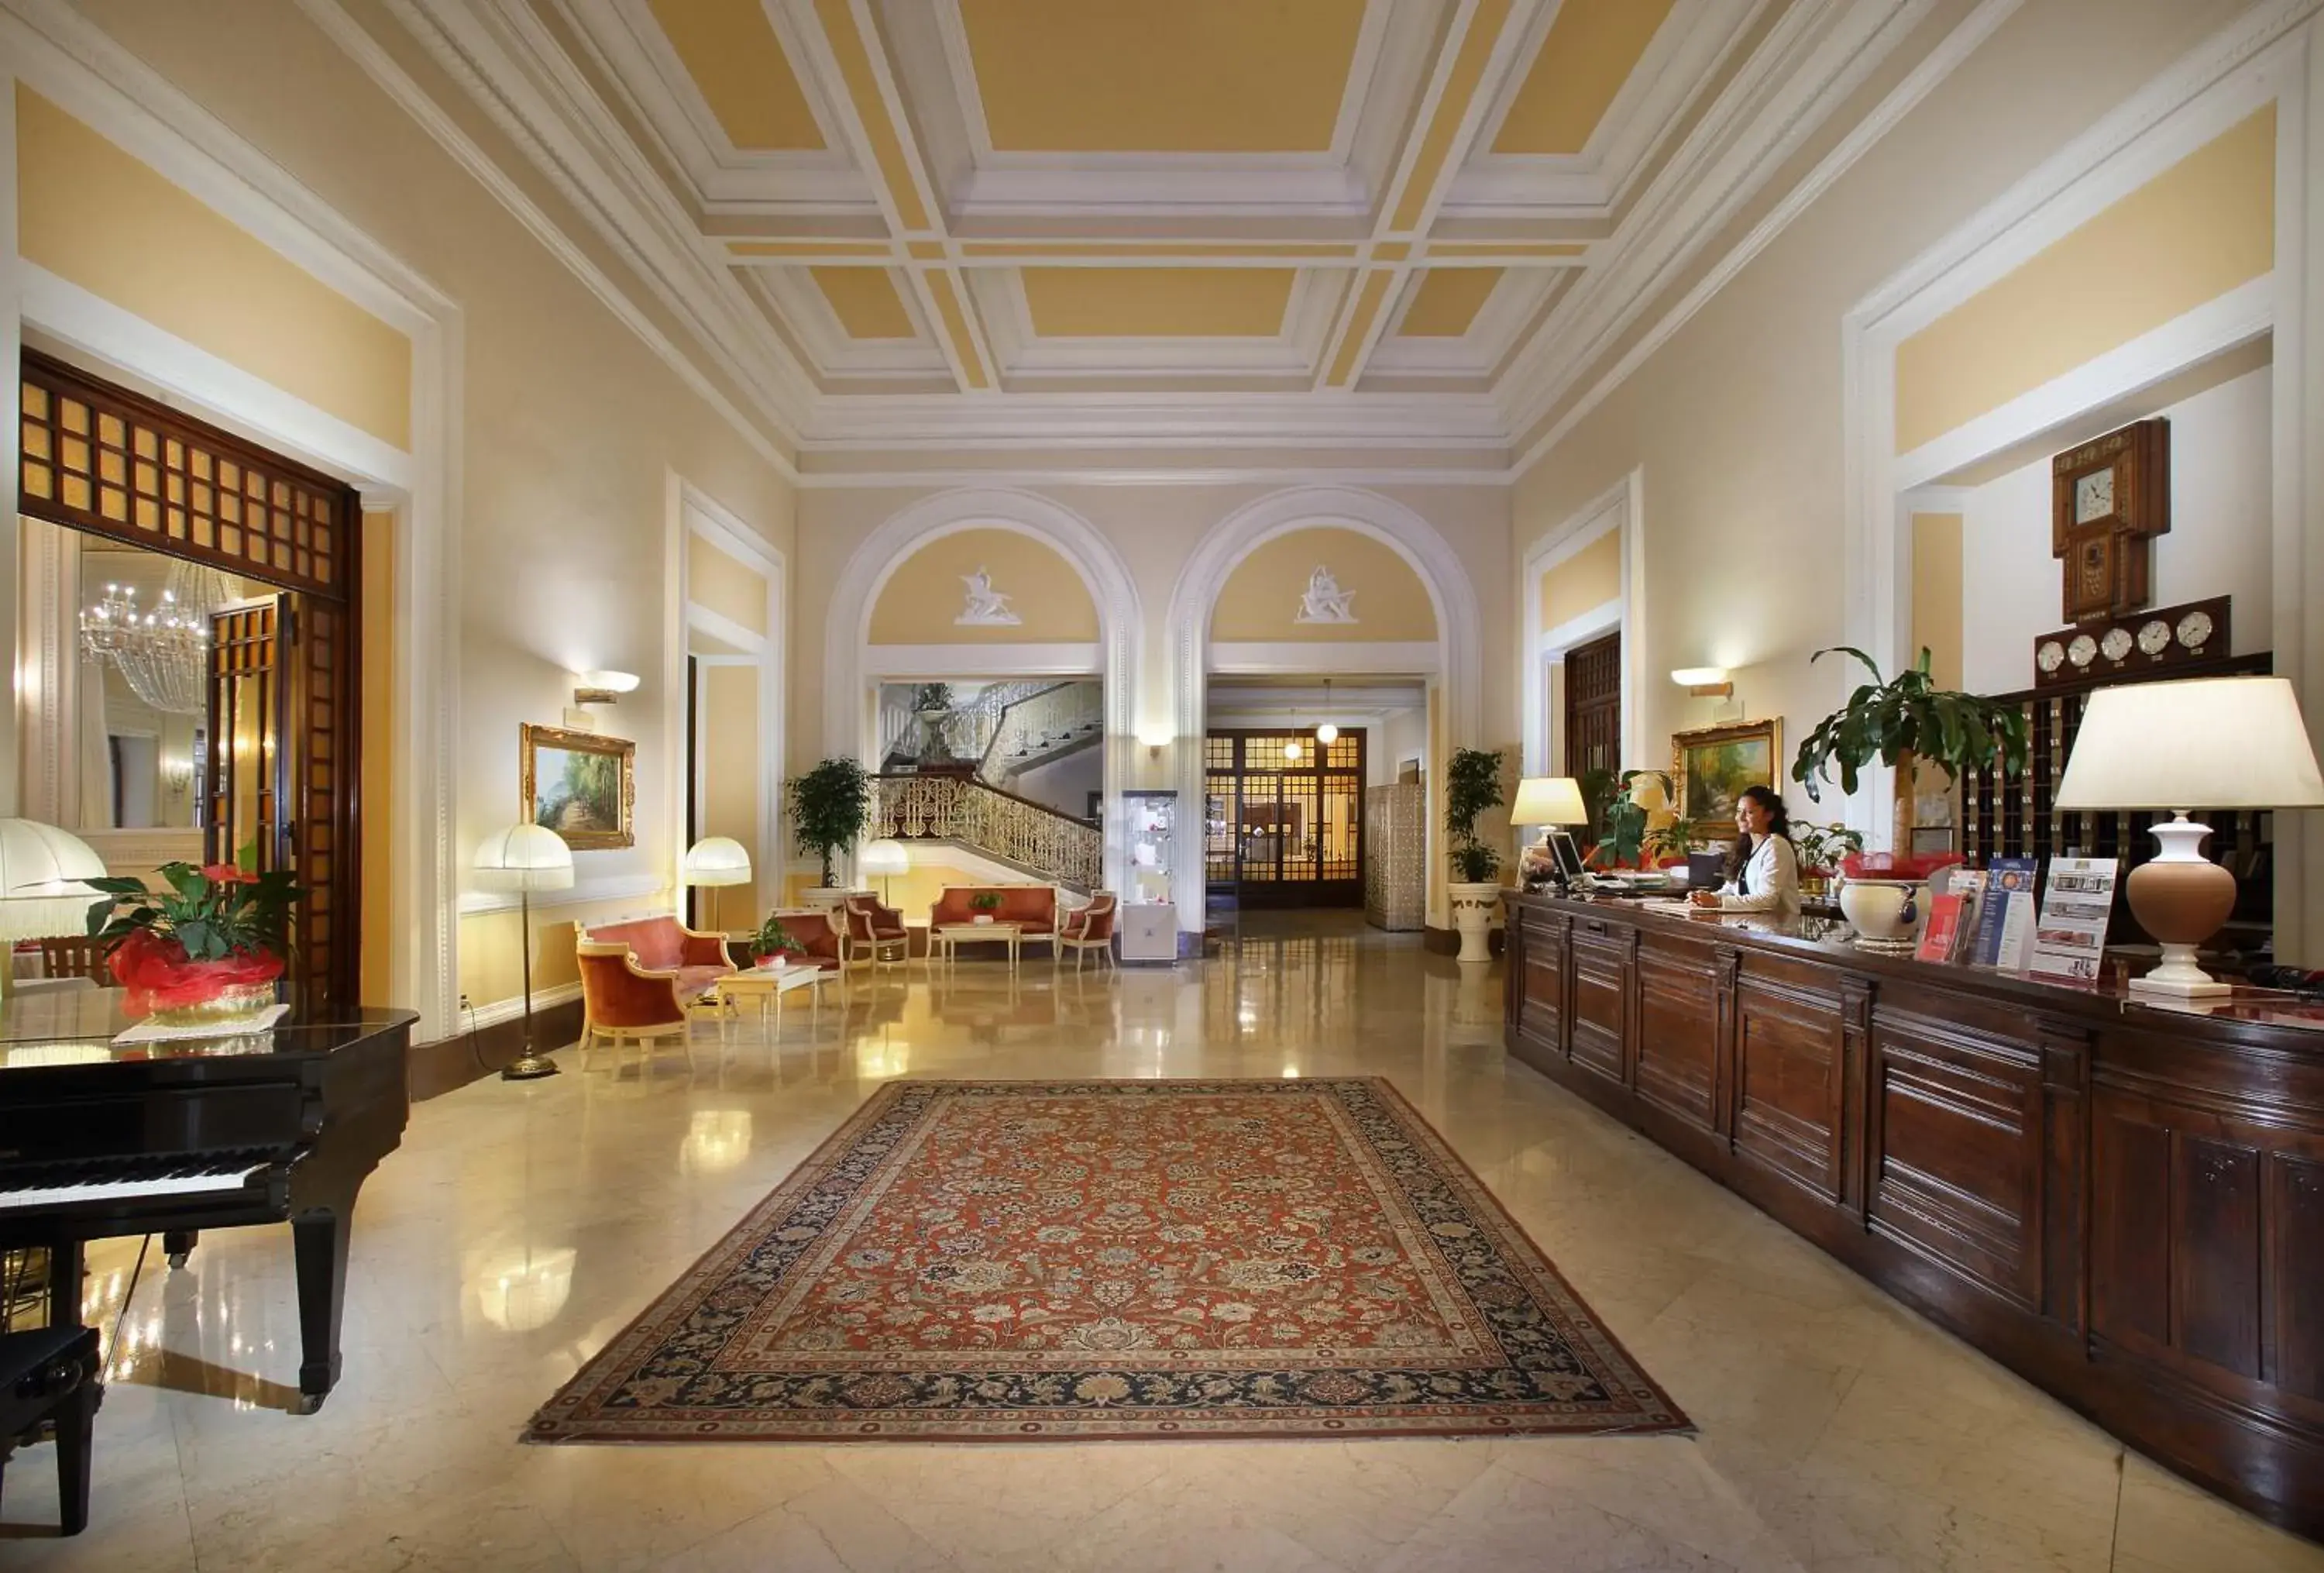 Lobby or reception, Lobby/Reception in Grand Hotel Plaza & Locanda Maggiore